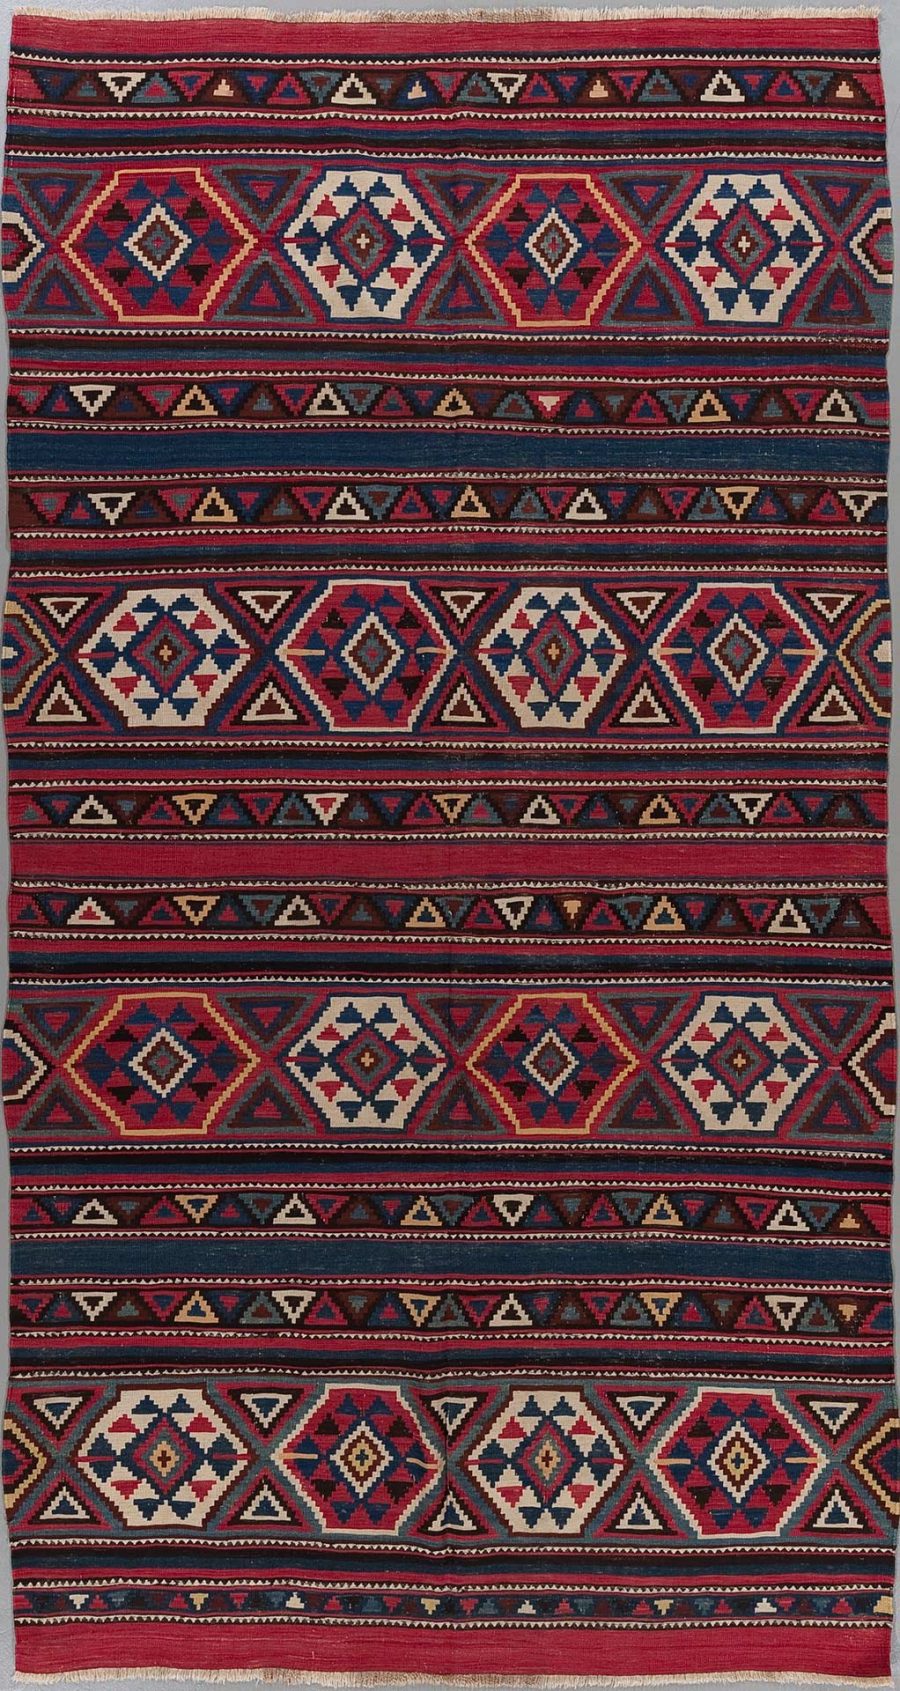 Traditioneller handgewebter Teppich mit wiederholten Mustern in Rot, Blau, Weiß und Beige.